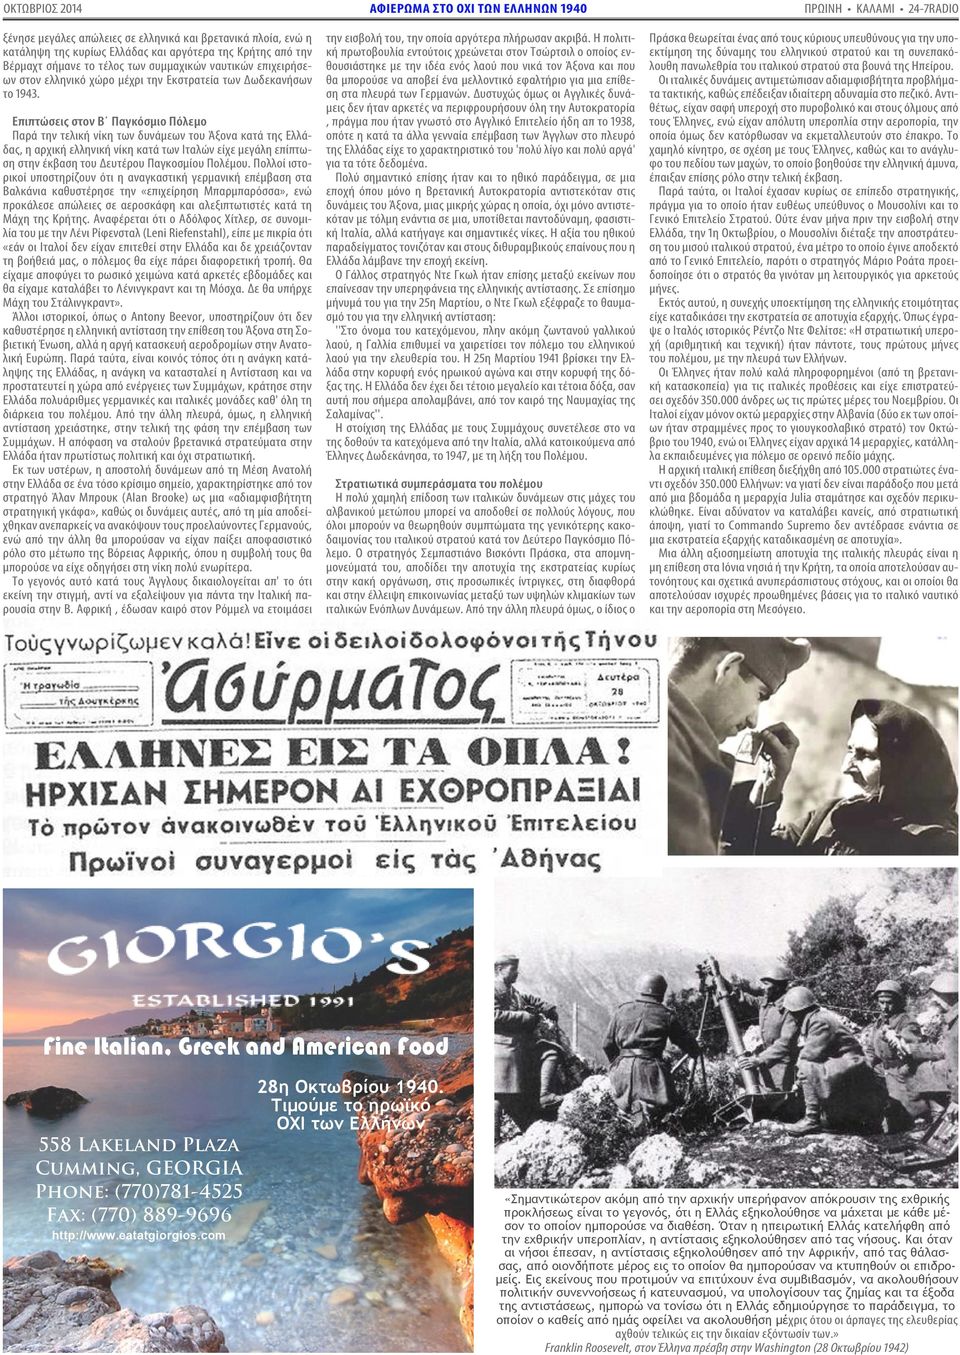 Επιπτώσεις στον Β Παγκόσμιο Πόλεμο Παρά την τελική νίκη των δυνάμεων του Άξονα κατά της Ελλάδας, η αρχική ελληνική νίκη κατά των Ιταλών είχε μεγάλη επίπτωση στην έκβαση του Δευτέρου Παγκοσμίου